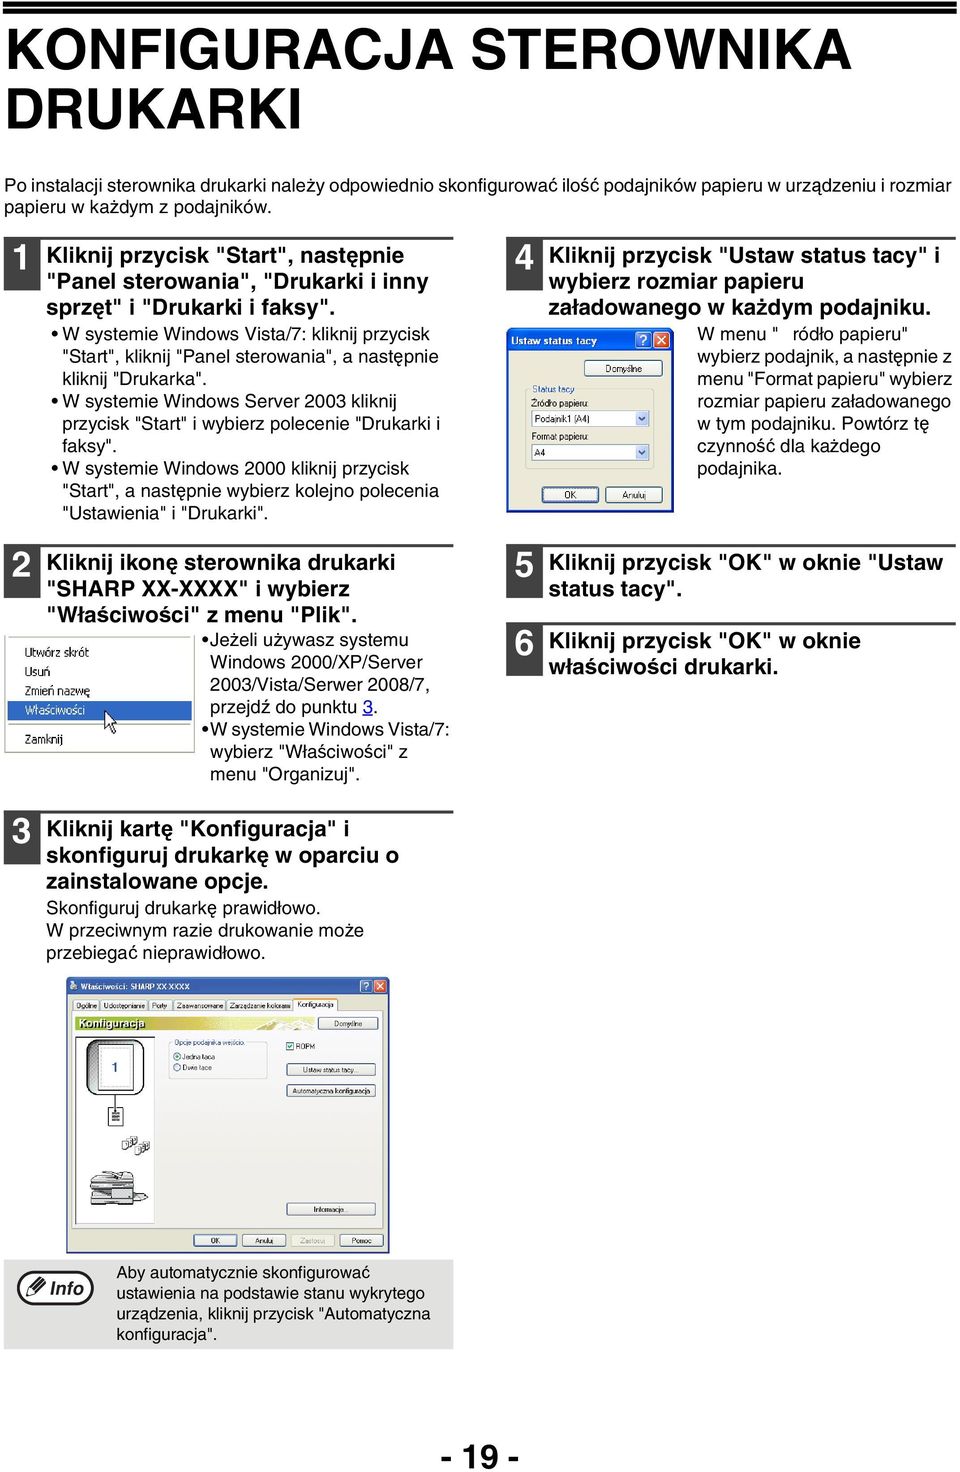 W systemie Windows Vista/7: kliknij przycisk "Start", kliknij "Panel sterowania", a następnie kliknij "Drukarka".